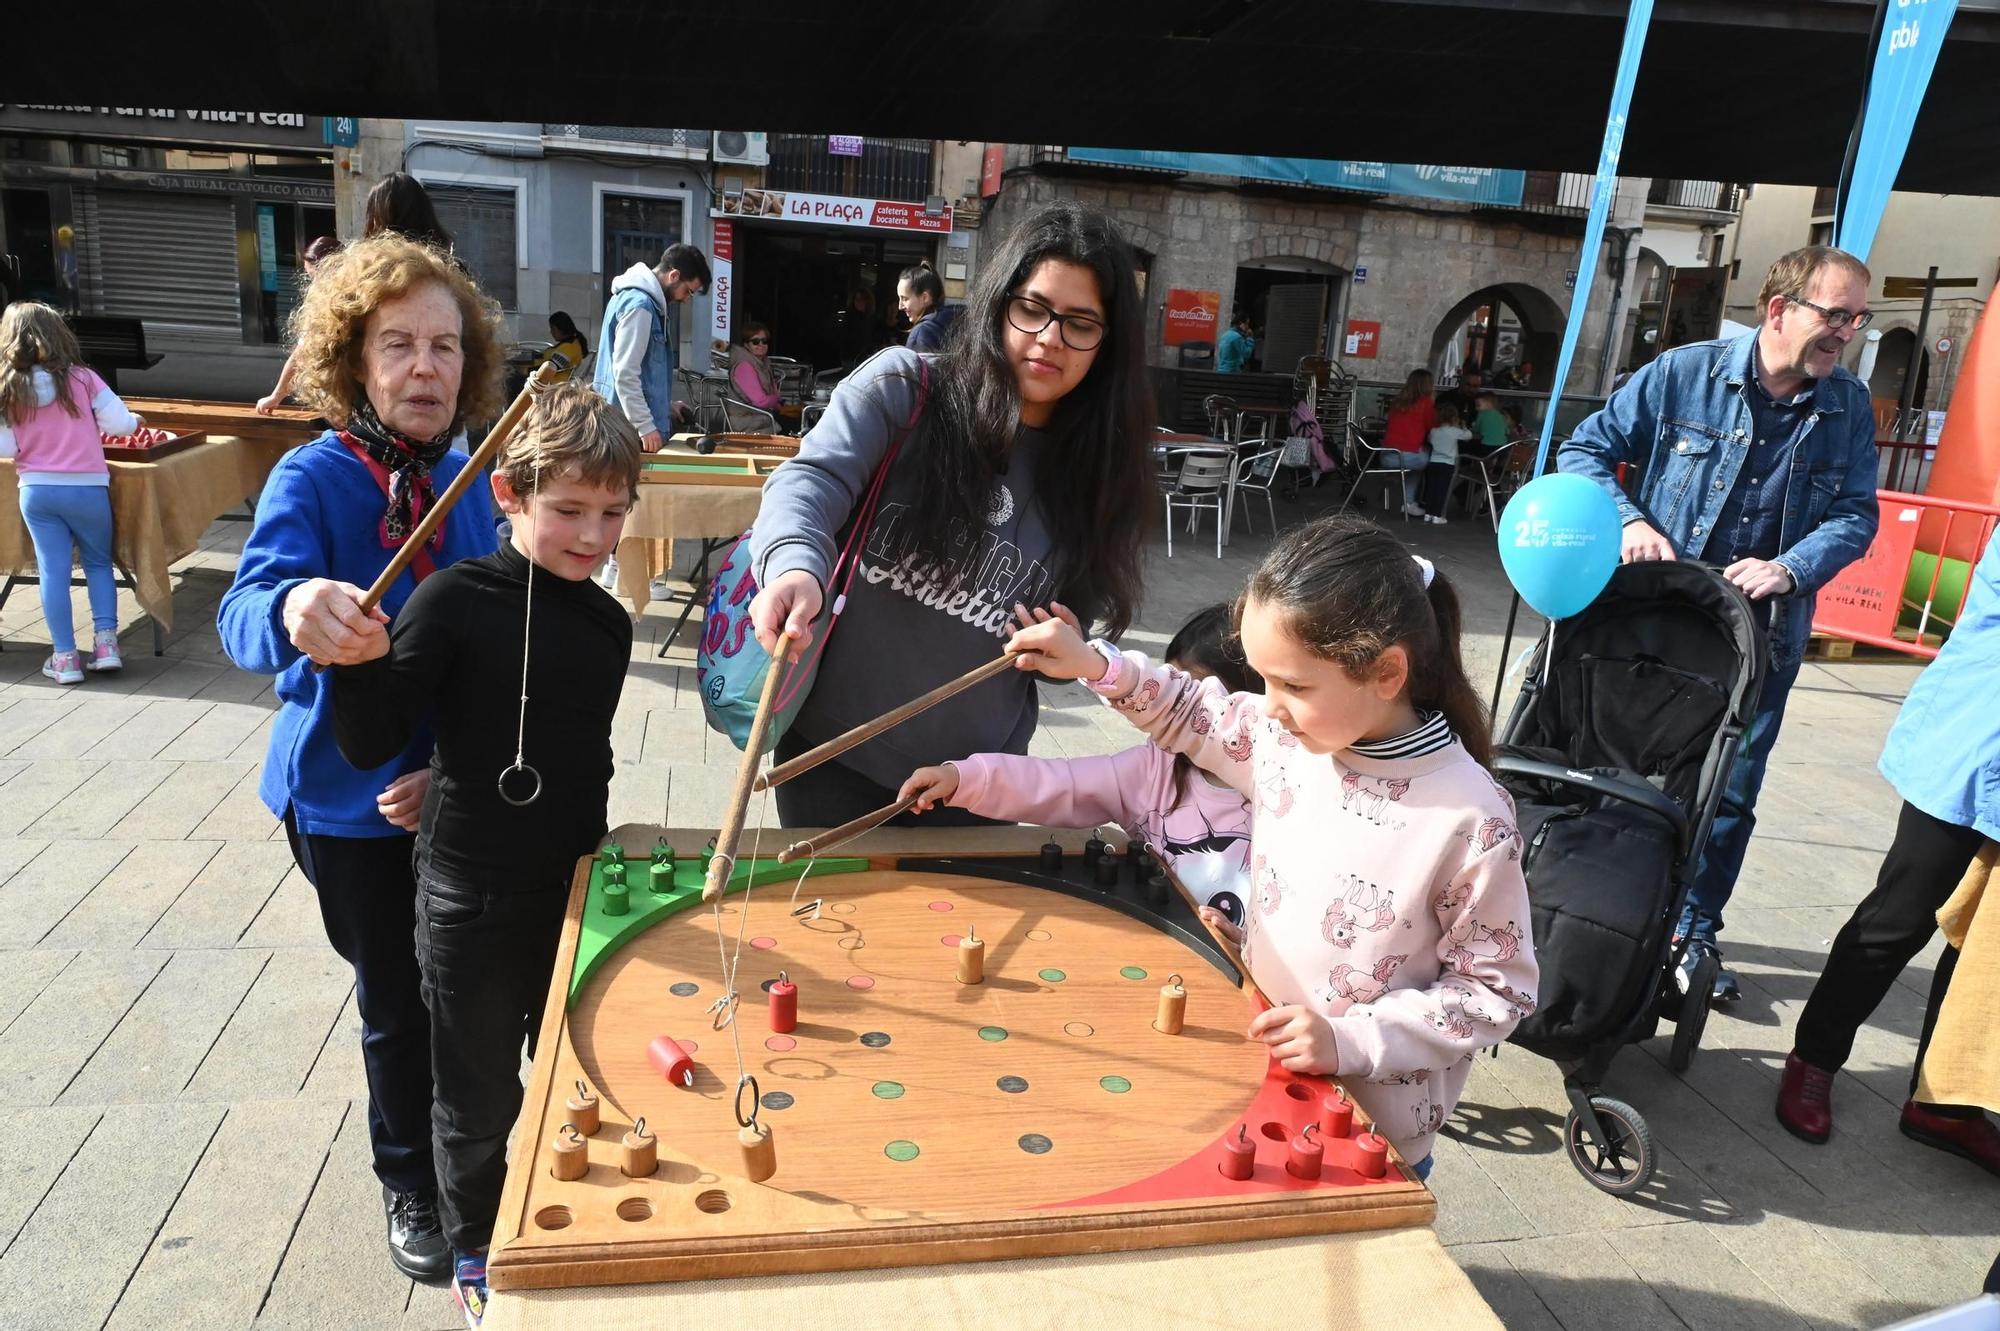 Los niños toman la plaza Major de Vila-real con juegos infantiles